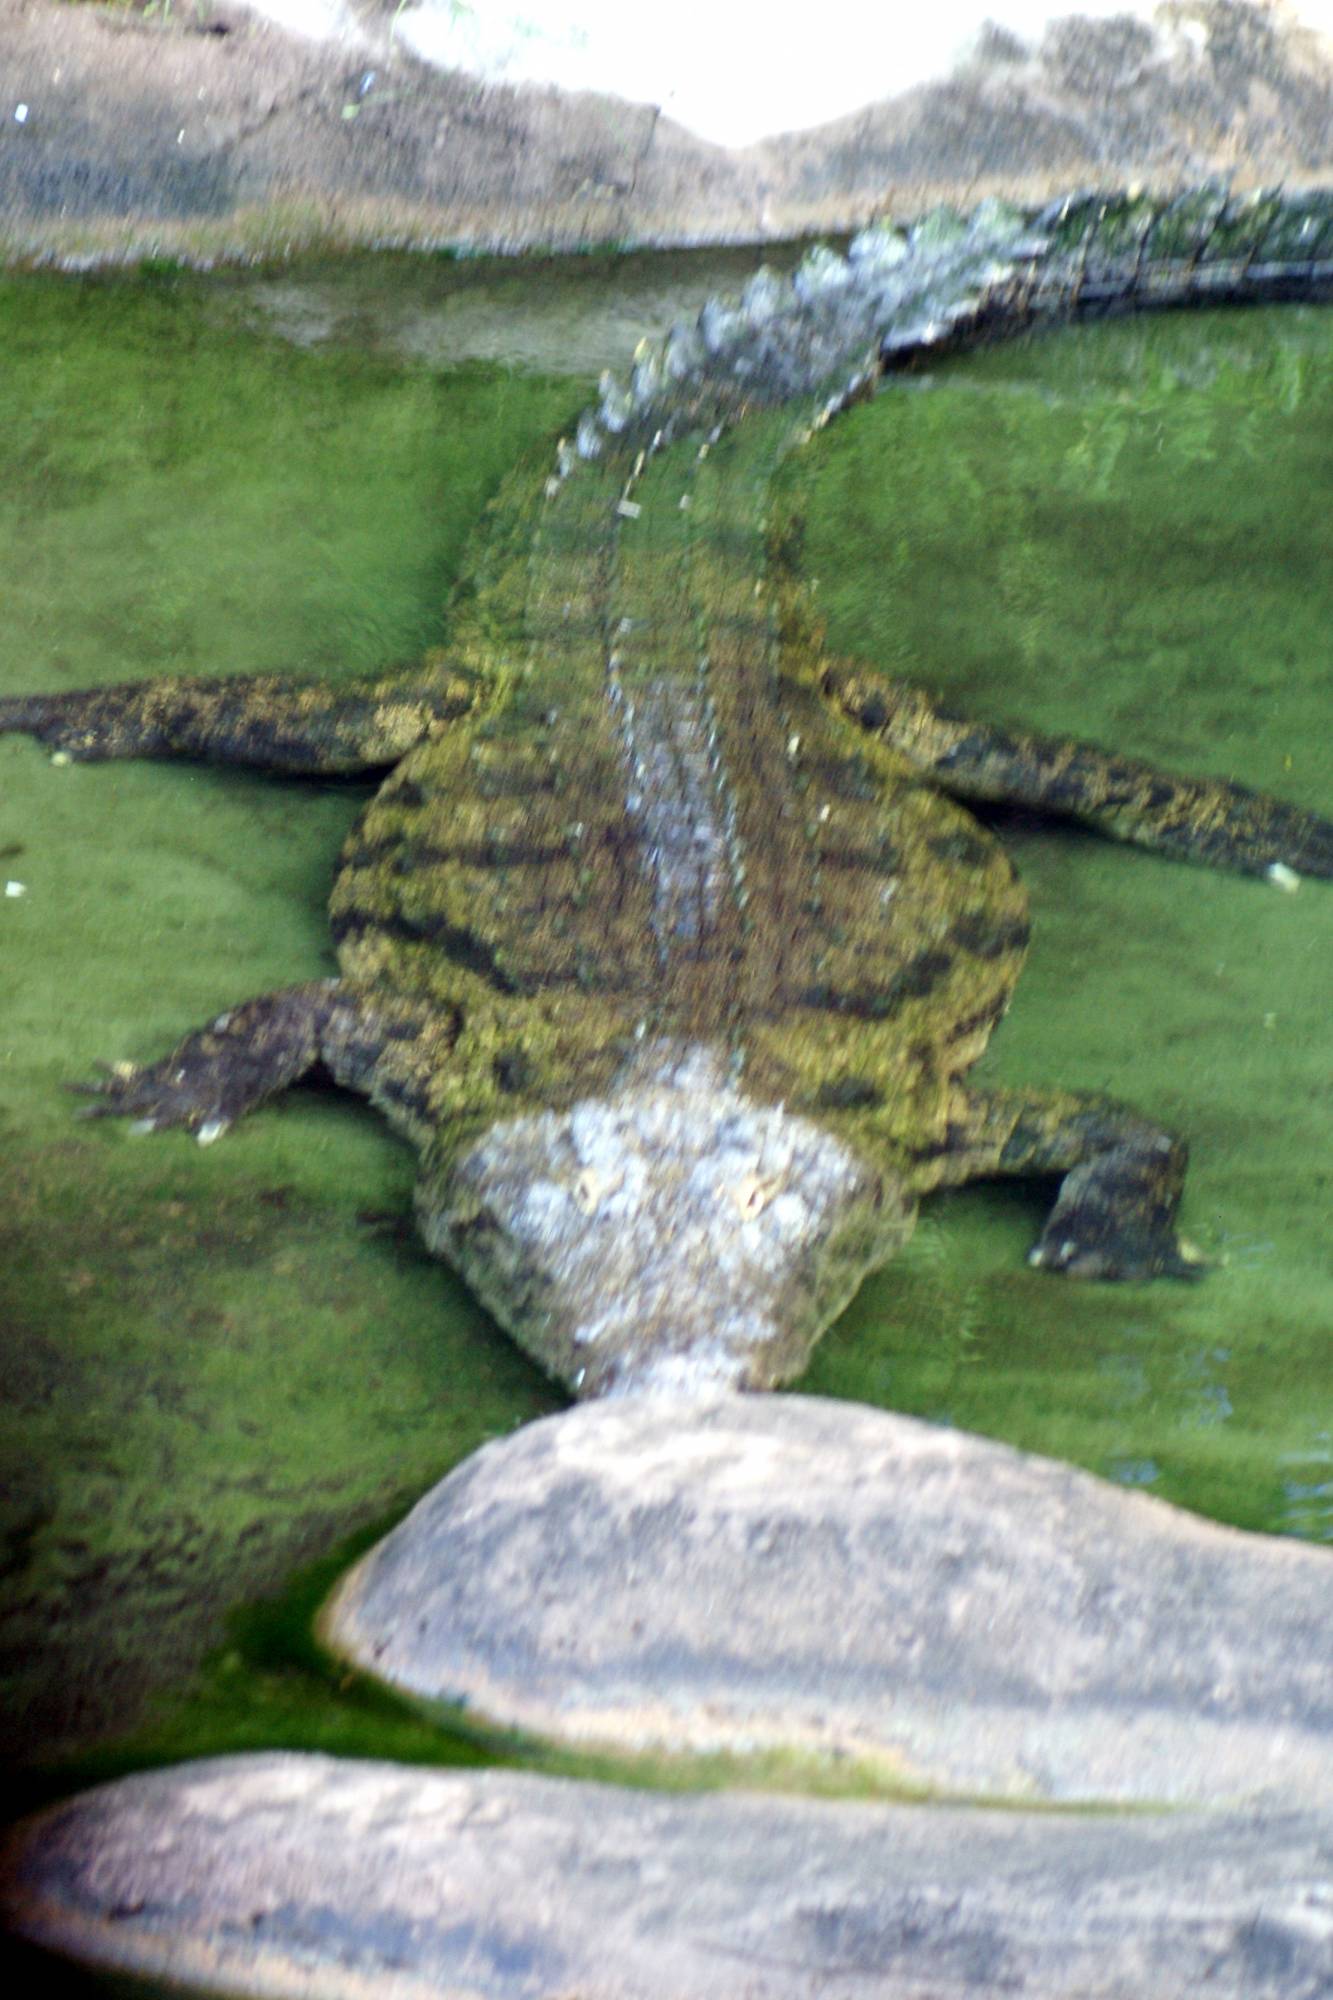 Alligators on the Sunrise Safari 3